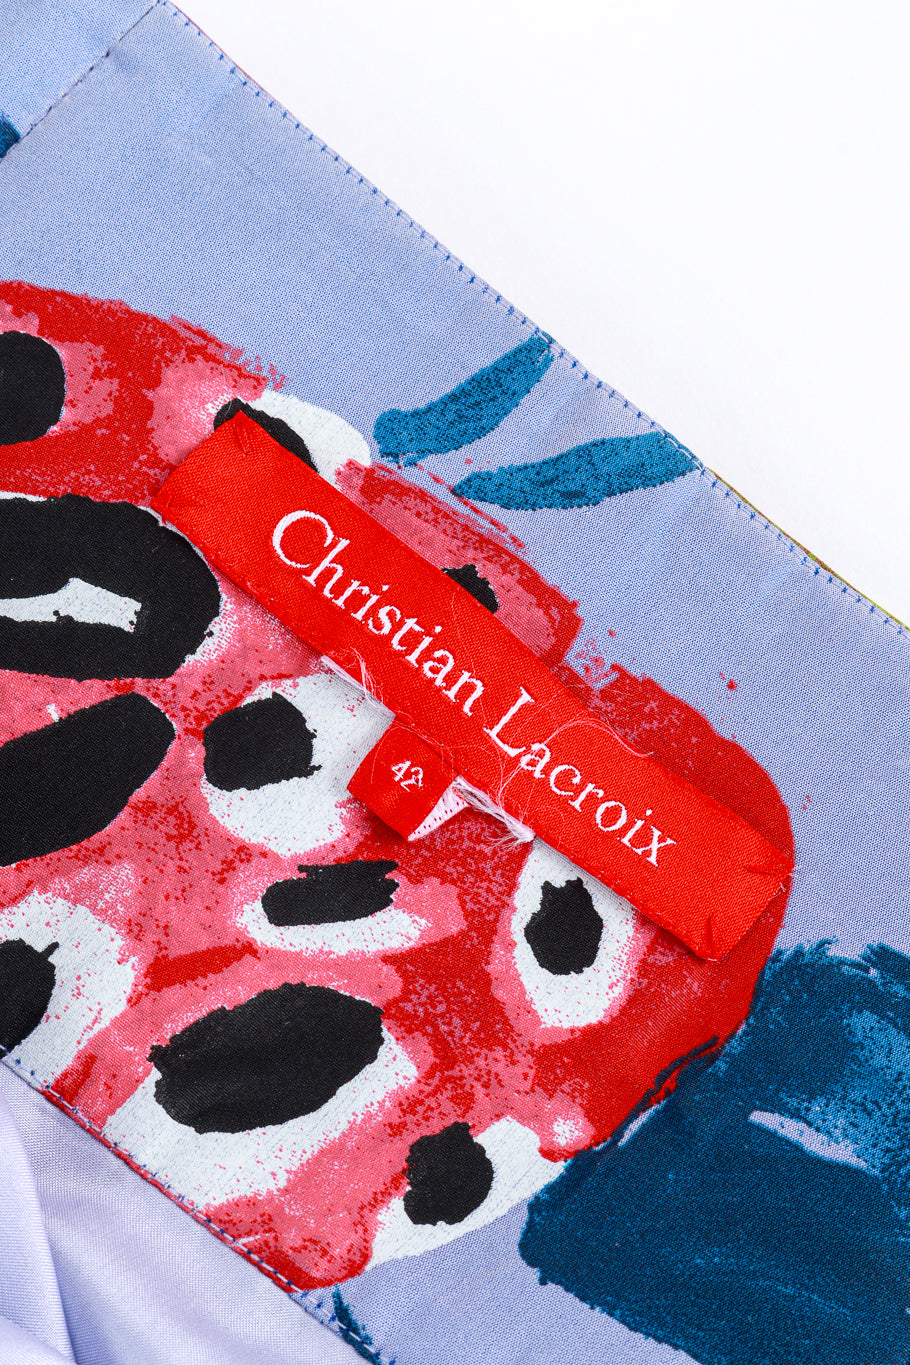 Vintage Christian Lacroix Floral Paint Print Skirt signature label @recess la